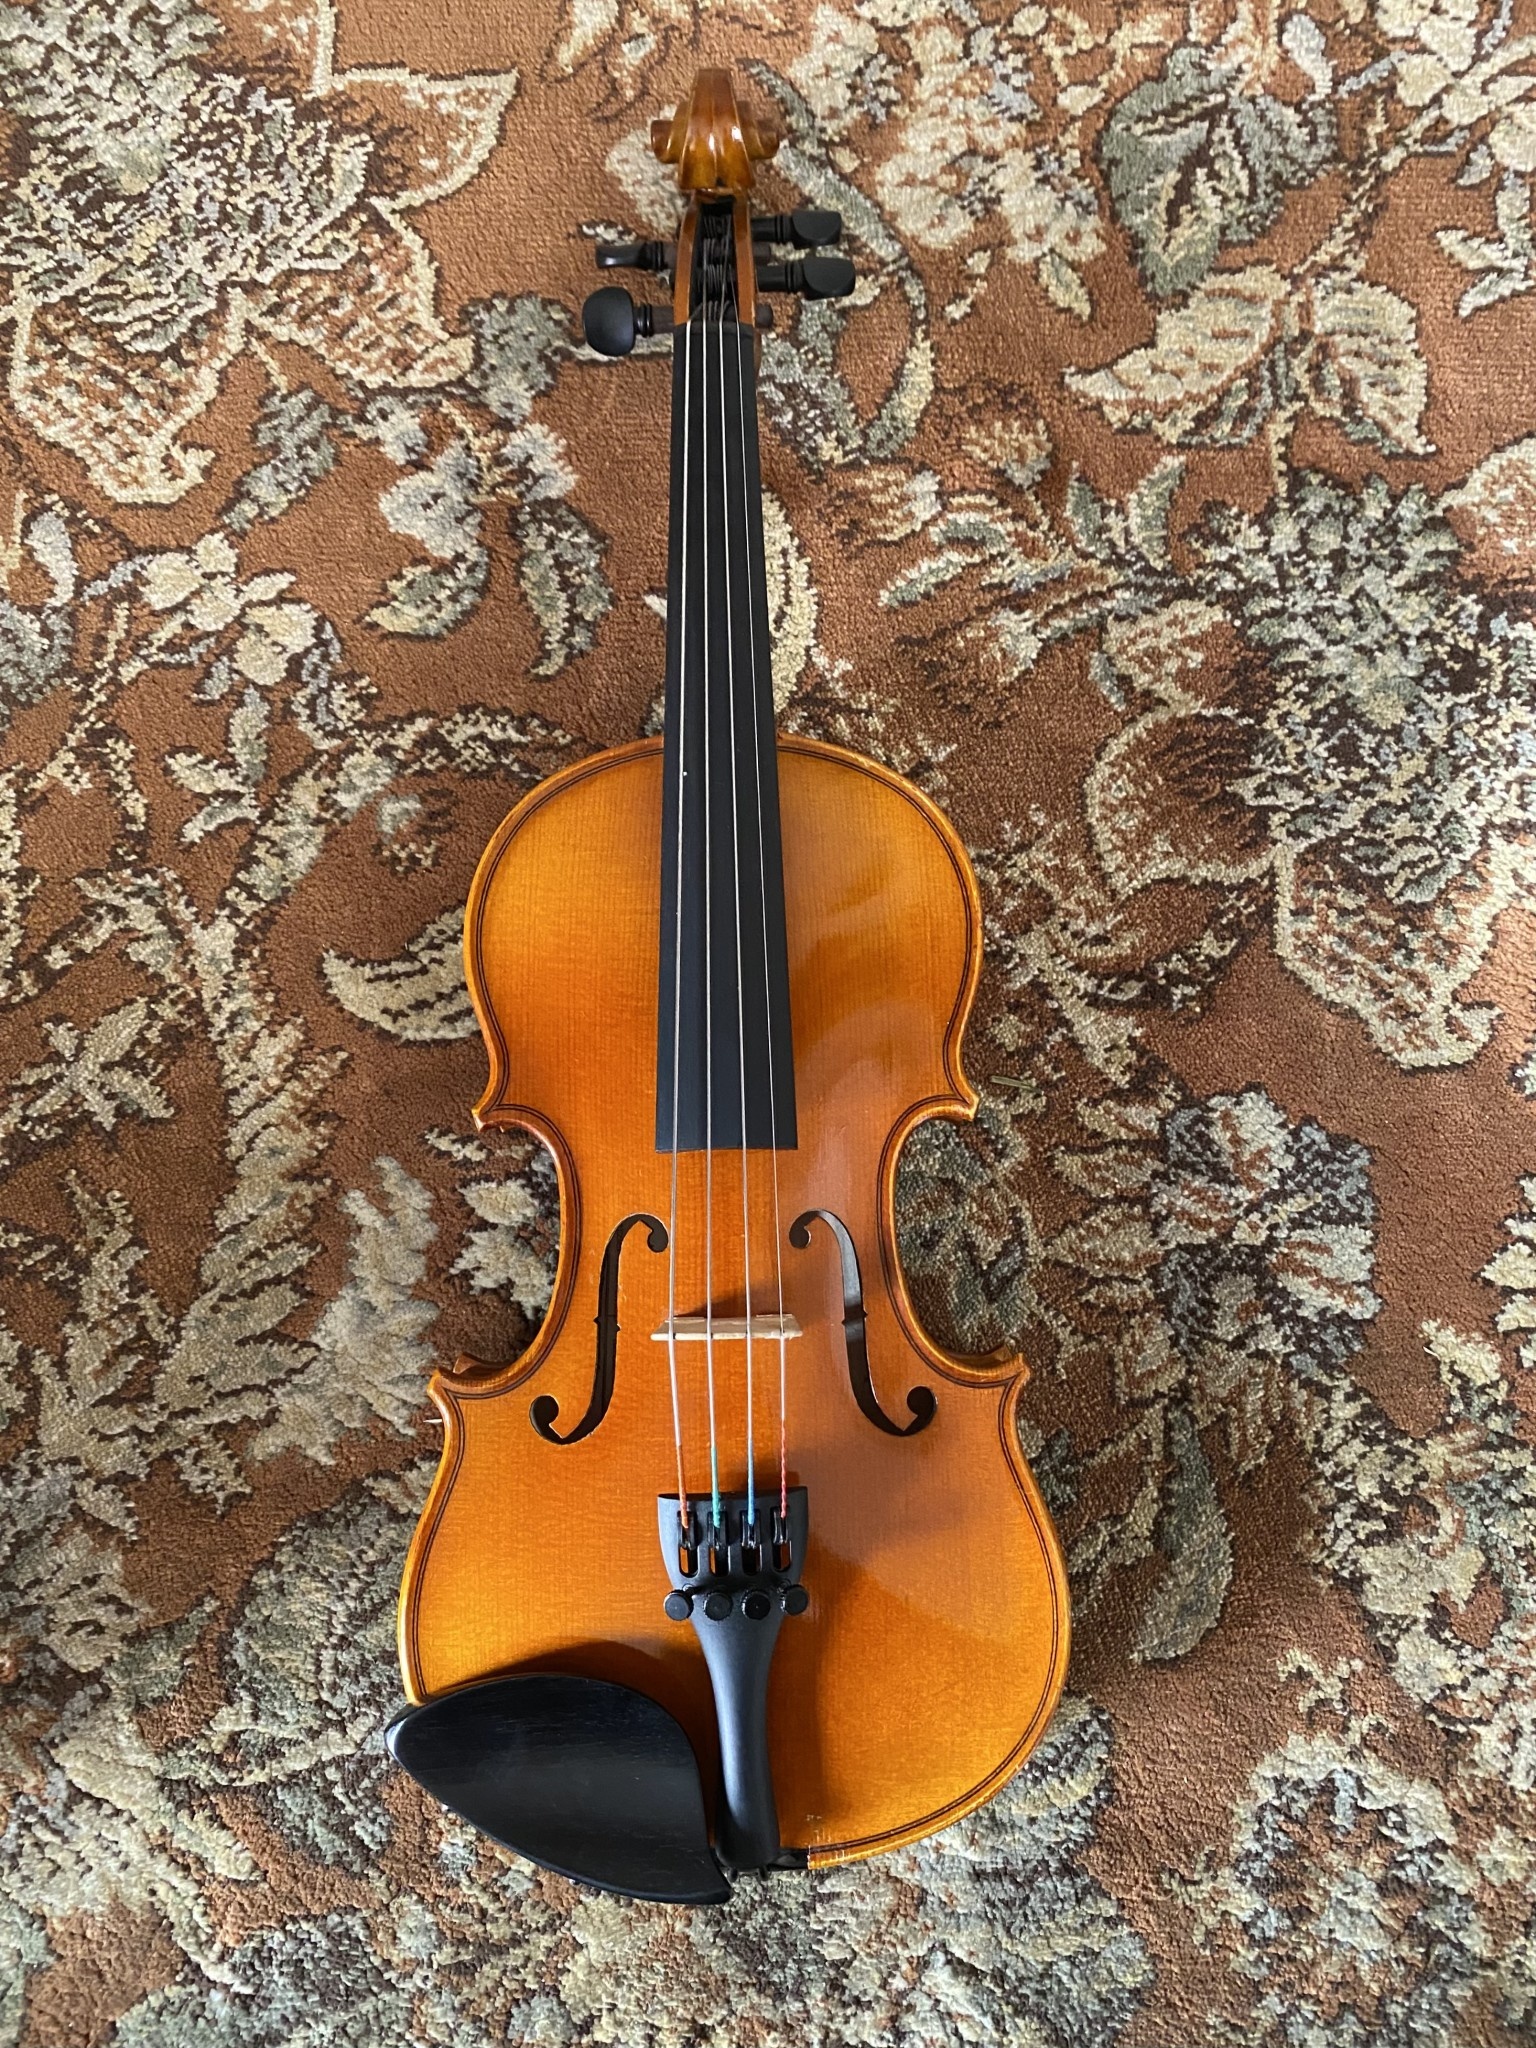 Serafina Used Serafina DX 1/10 violin with free case, bow, rosin & polish cloth (#221) 2020